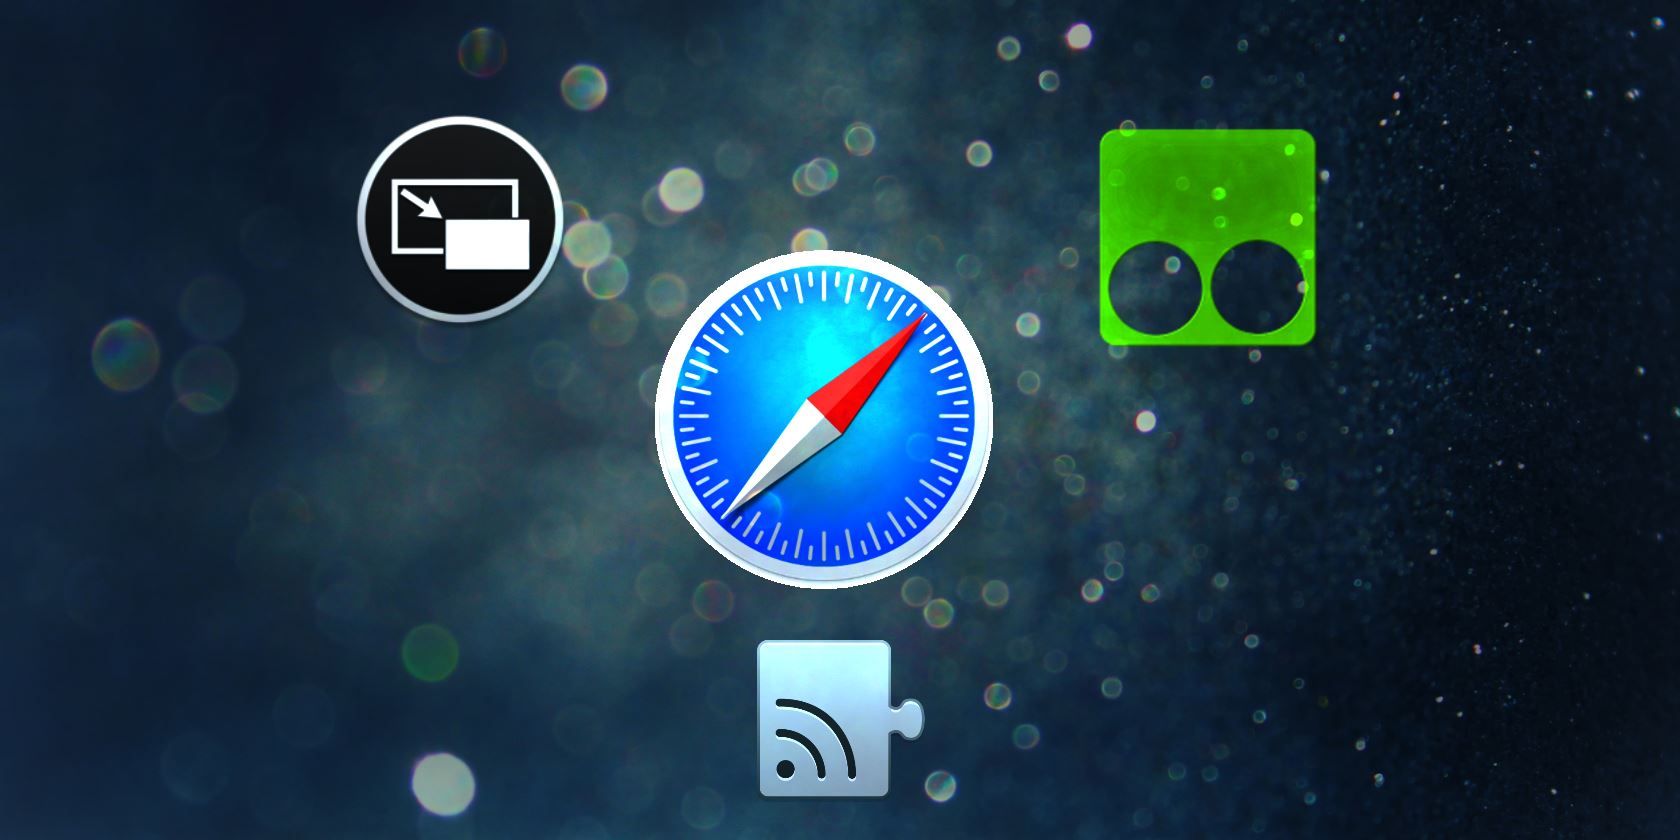 Plugins For Safari On Mac